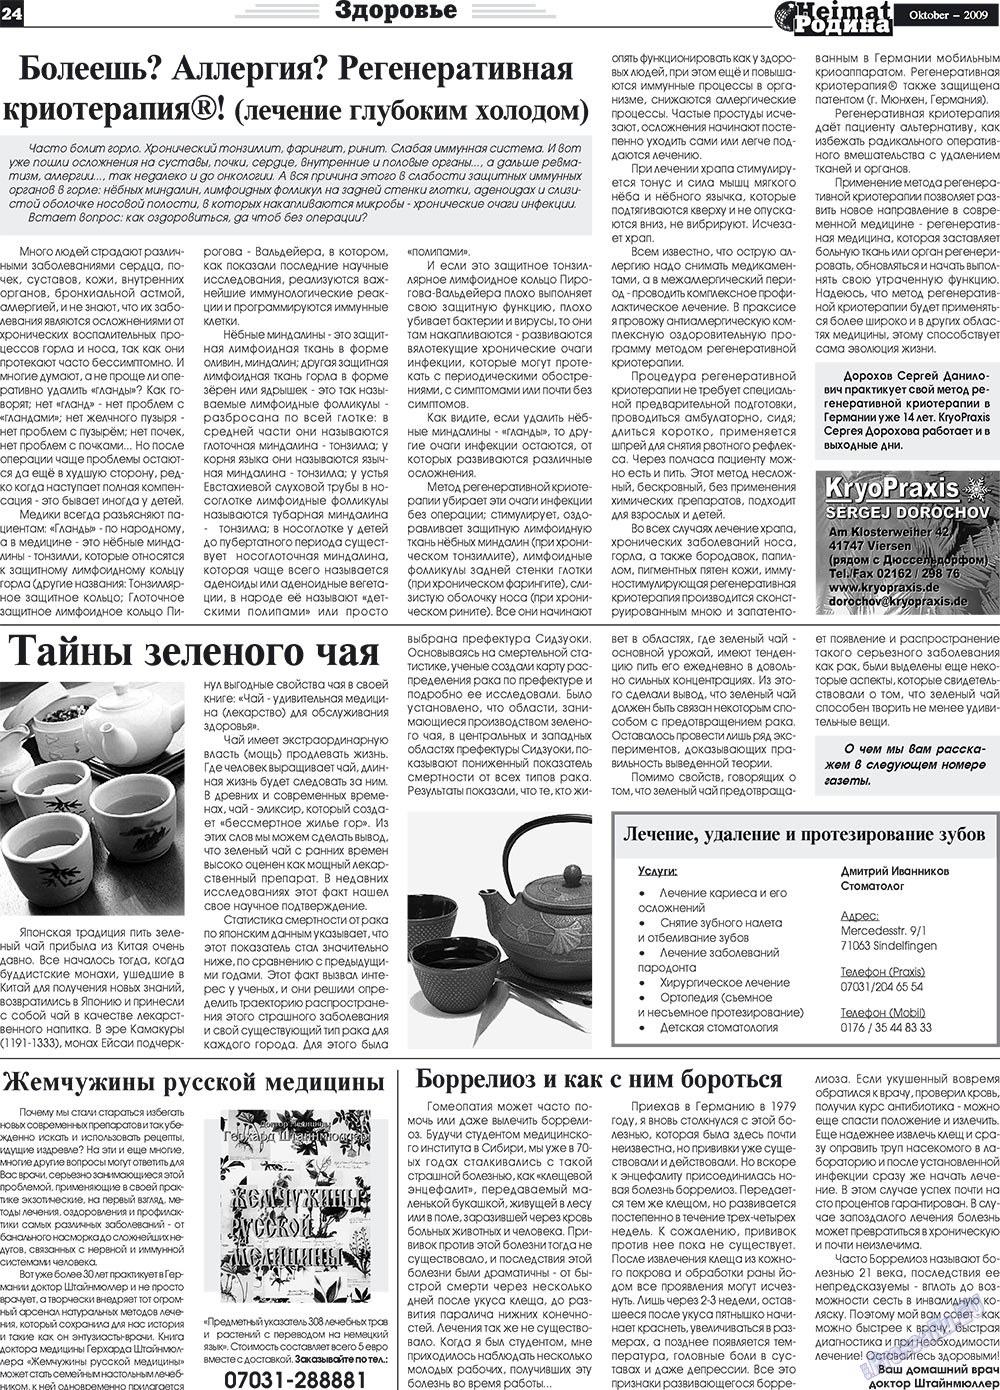 Heimat-Родина (газета). 2009 год, номер 10, стр. 24